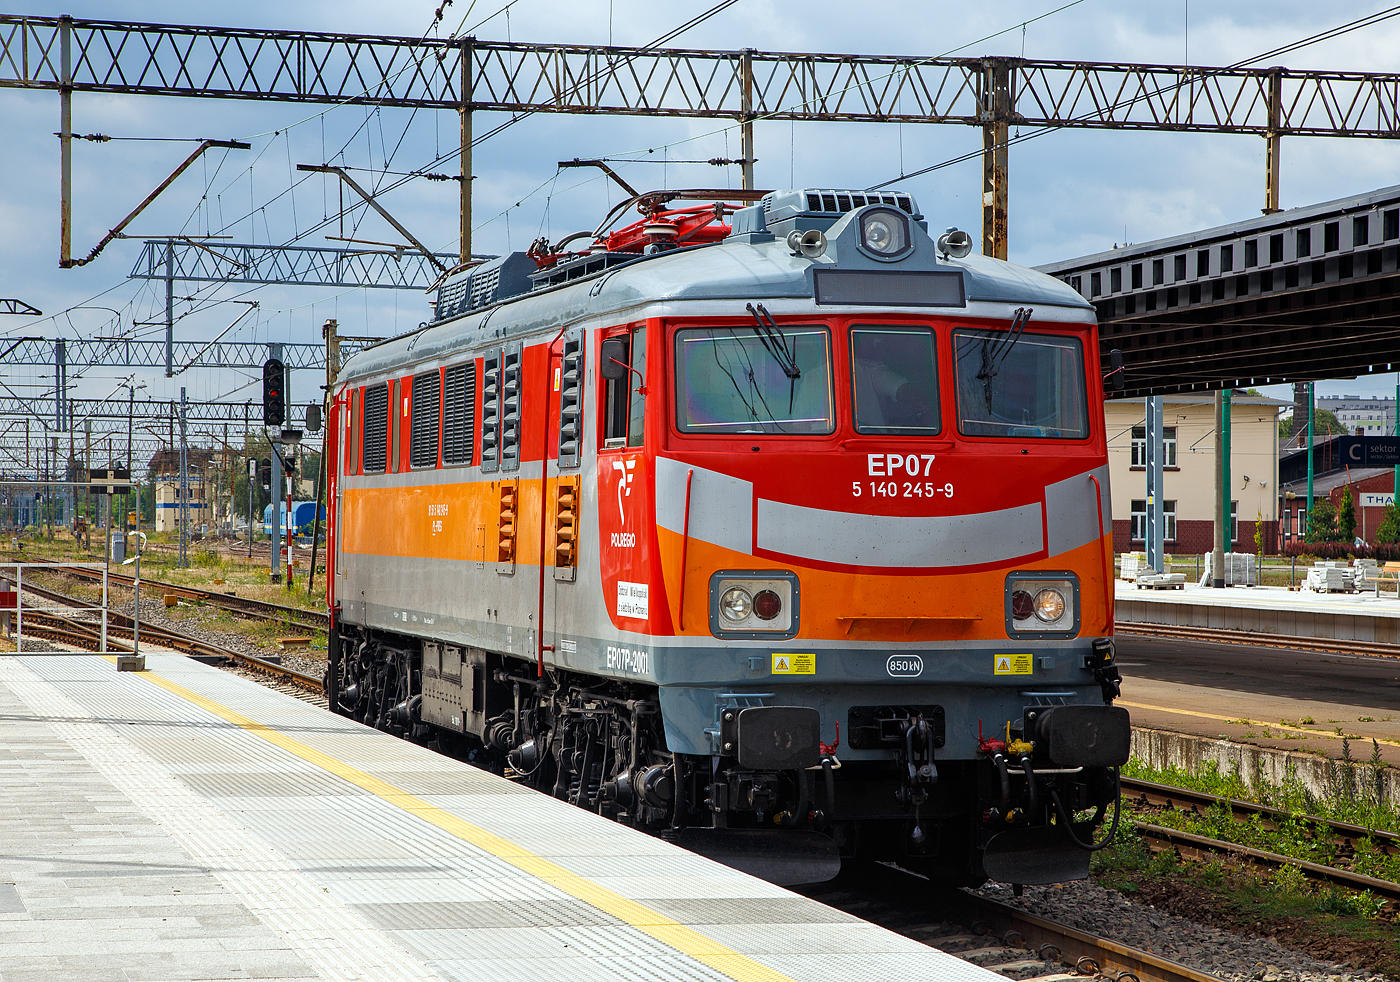 Die EP 07 P – 2001 (91 51 5 140 245-9 PL-PREG) der POLREGIO  (Przewozy Regionalne sp. z o.o.), ex PKP EU07-046, am 25.06.2017 beim Umsetzen im Hauptbahnhof Posen (Poznań Główny). 

Diese ist eine der wenigen die älteren Typ Pafawag 4E umgebaut wurde. Die Lok wurde 1968 Pafawag unter der Fabriknummer 4E-046 gebaut, 2012 erfolgte der Umbau/Modernisierung durch  ZNLE Gliwice (heute Newag Gliwice) in die EP07-2001. 

Die PKP Baureihe EP07 entstanden aus Umbauen der Baureihe EU 07 d.h. Loks vom Typ HCP 303E (HCP = H.Cegielski – Poznań S.A.) bzw. der älteren Pafawag 4E. Die Loks wurden besser an die Bedürfnisse des Schnellzugverkehrs angepasst, da die Motoren bei höheren Geschwindigkeiten störanfällig waren. Hierzu wurde das Getriebe von einem Übersetzungsverhältnis von 79:18 auf ein solches von 76:21 umgebaut. Überwiegend wurden für den Umbau Lokomotiven der zweiten Serie (HCP 303E) verwendet, nur 15 EU07 der älteren Pafawag 4E wurden umgebaut.

Die eigentliche PKP Ausgangs-Baureihe EU07 entstand aus der ab 1961 von English Electric gelieferte Baureihe EU06, welche ab 1965 dann von Pafawag (Państwowa Fabryka Wagonów) in Wrocław in Lizenz nachgebaut wurde. Es wurden lediglich kleine Veränderungen vorgenommen (geringfügig vergrößerte Breite). Die Lizenzbauten erhielten die Typenbezeichnung 4E und wurden als Baureihe EU07 an die PKP ausgeliefert. Bis 1974 wurden 240 Lokomotiven gebaut. 

Von der Baureihe EU07 wurde 1972 durch Änderung des Getriebes die Baureihe EP08 für eine Höchstgeschwindigkeit von 140 km/h (statt 125 km/h bei der EU07) abgeleitet.
Im Jahr 1983 wurde der Bau der Baureihe EU07 fortgesetzt, jetzt aber von H.Cegielski – Poznań S.A. (HCP). Hierbei wurden einige Änderungen vorgenommen (verstärkter, um 0,32 m verlängerter Lokkasten mit gesickten Seitenwände, für den Einbau einer automatischen Kupplung vorbereitet, um 3,4 t erhöhtes Gewicht). Diese Variante erhielt die Typenbezeichnung 303E, wurde aber ebenfalls als EU07 bei den PKP eingereiht. Bis 1992 wurden 242 Lokomotiven des Typs 303E gebaut. Drei weitere entstanden 1990 bis 1994 aus einzelnen Hälften von Lokomotiven der Baureihe ET41.

TECHNISCHE DATEN:
Hersteller:  Pafawag, Wrocław (4E) / Cegielski, Poznań (303E)
Spurweite: 1.435 mm (Normalspur)
Achsanordnung:  Bo' Bo'
Länge über Kupplung: 15.915 mm (16.235 mm bei Typ 303E)
Höhe: 4.343 mm
Breite: 3038 mm
Drehzapfenabstand: 8.550 mm
Achsabstand im Drehgestell: 3.050 mm
Dienstgewicht: 80,4 t    (83,4 t  beim Typ 303E)
Höchstgeschwindigkeit: 125 km/h
Stundenleistung: 2.080 kW
Dauerleistung: 2.000 kW
Treibraddurchmesser:  1.250 mm (neu)
Stromsystem: 3 kV Gleichstrom
Anzahl der Fahrmotoren: 4 x EE541